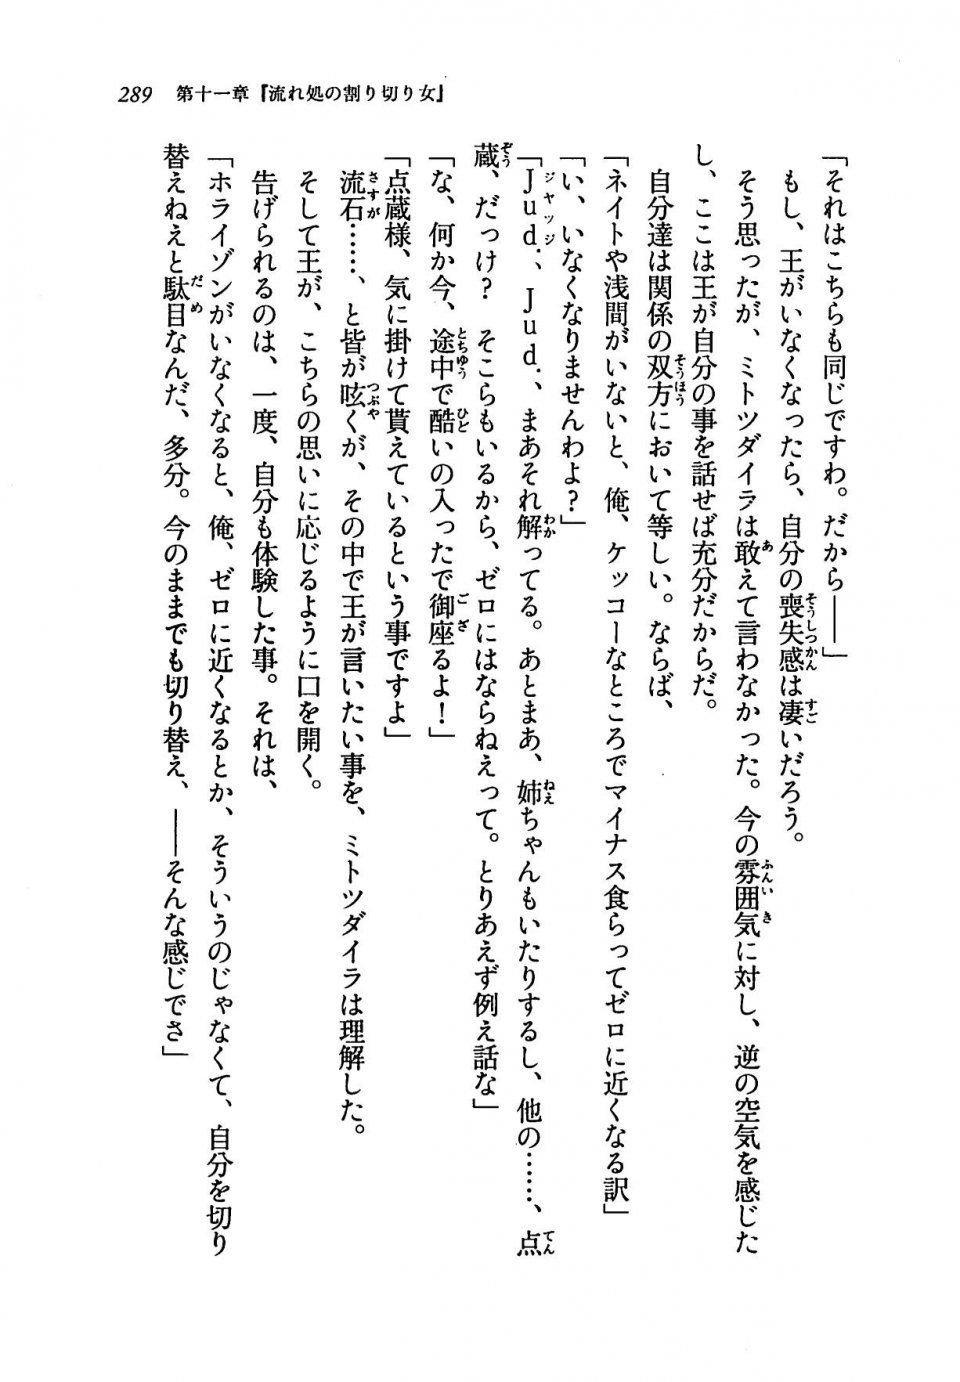 Kyoukai Senjou no Horizon LN Vol 19(8A) - Photo #289